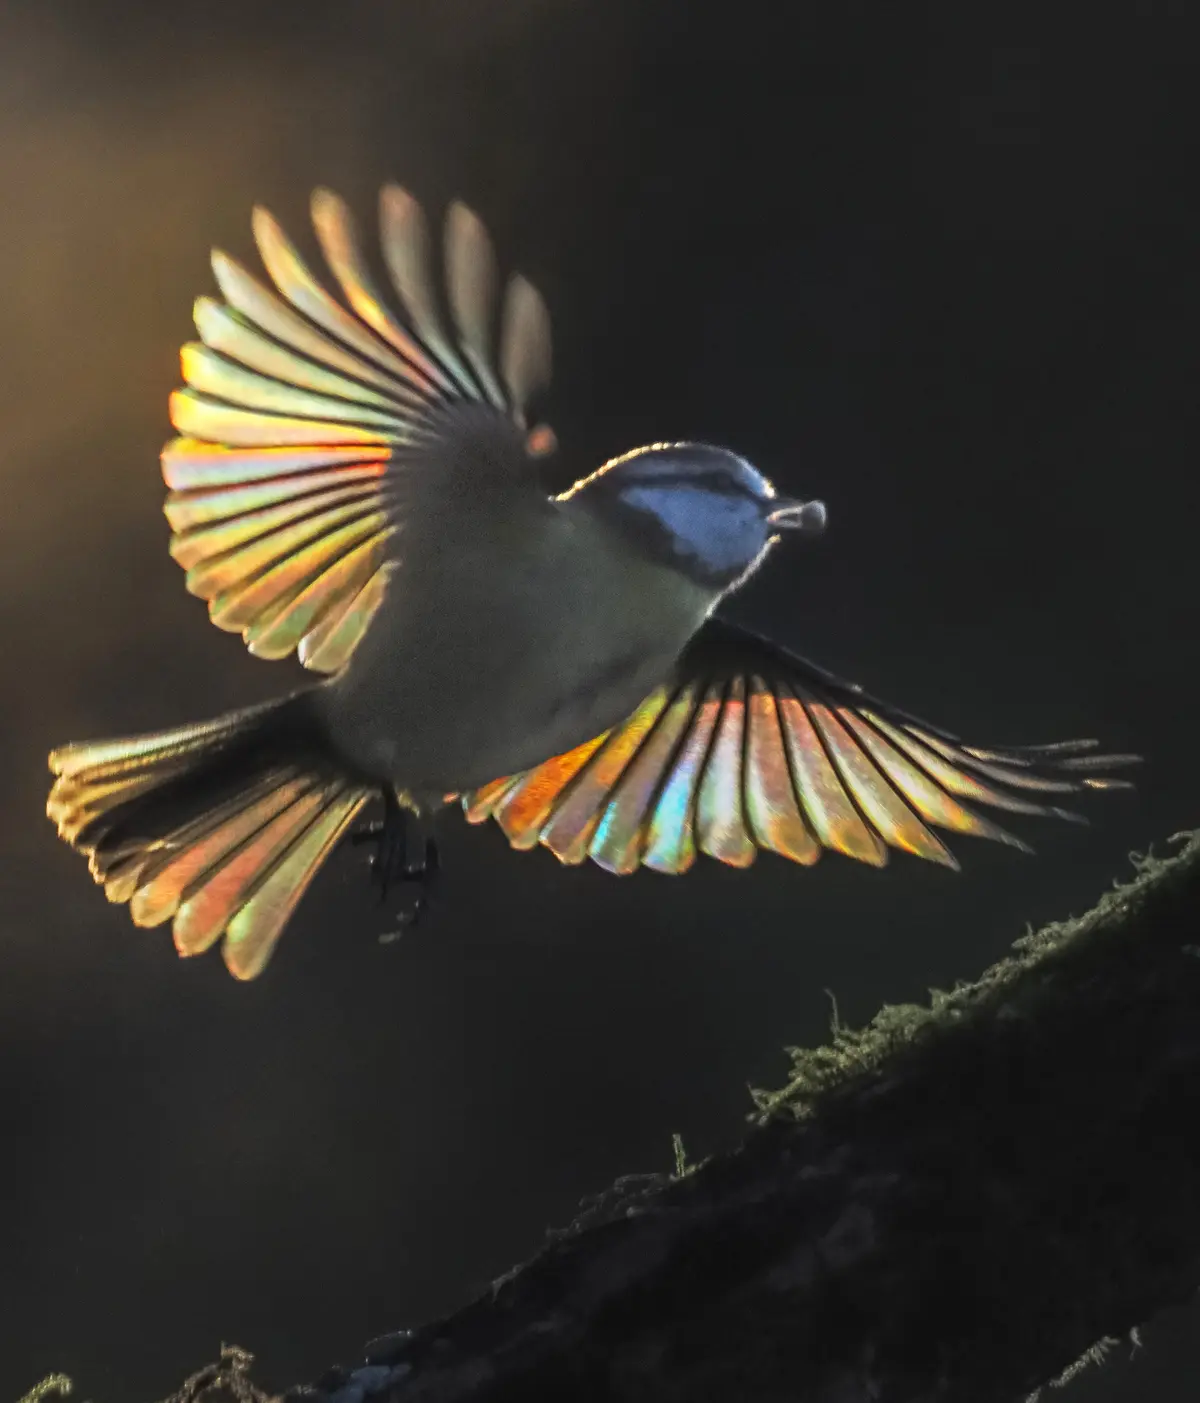 Посмотрите фотографии, где сквозь крылышки маленьких птичек светится радуга